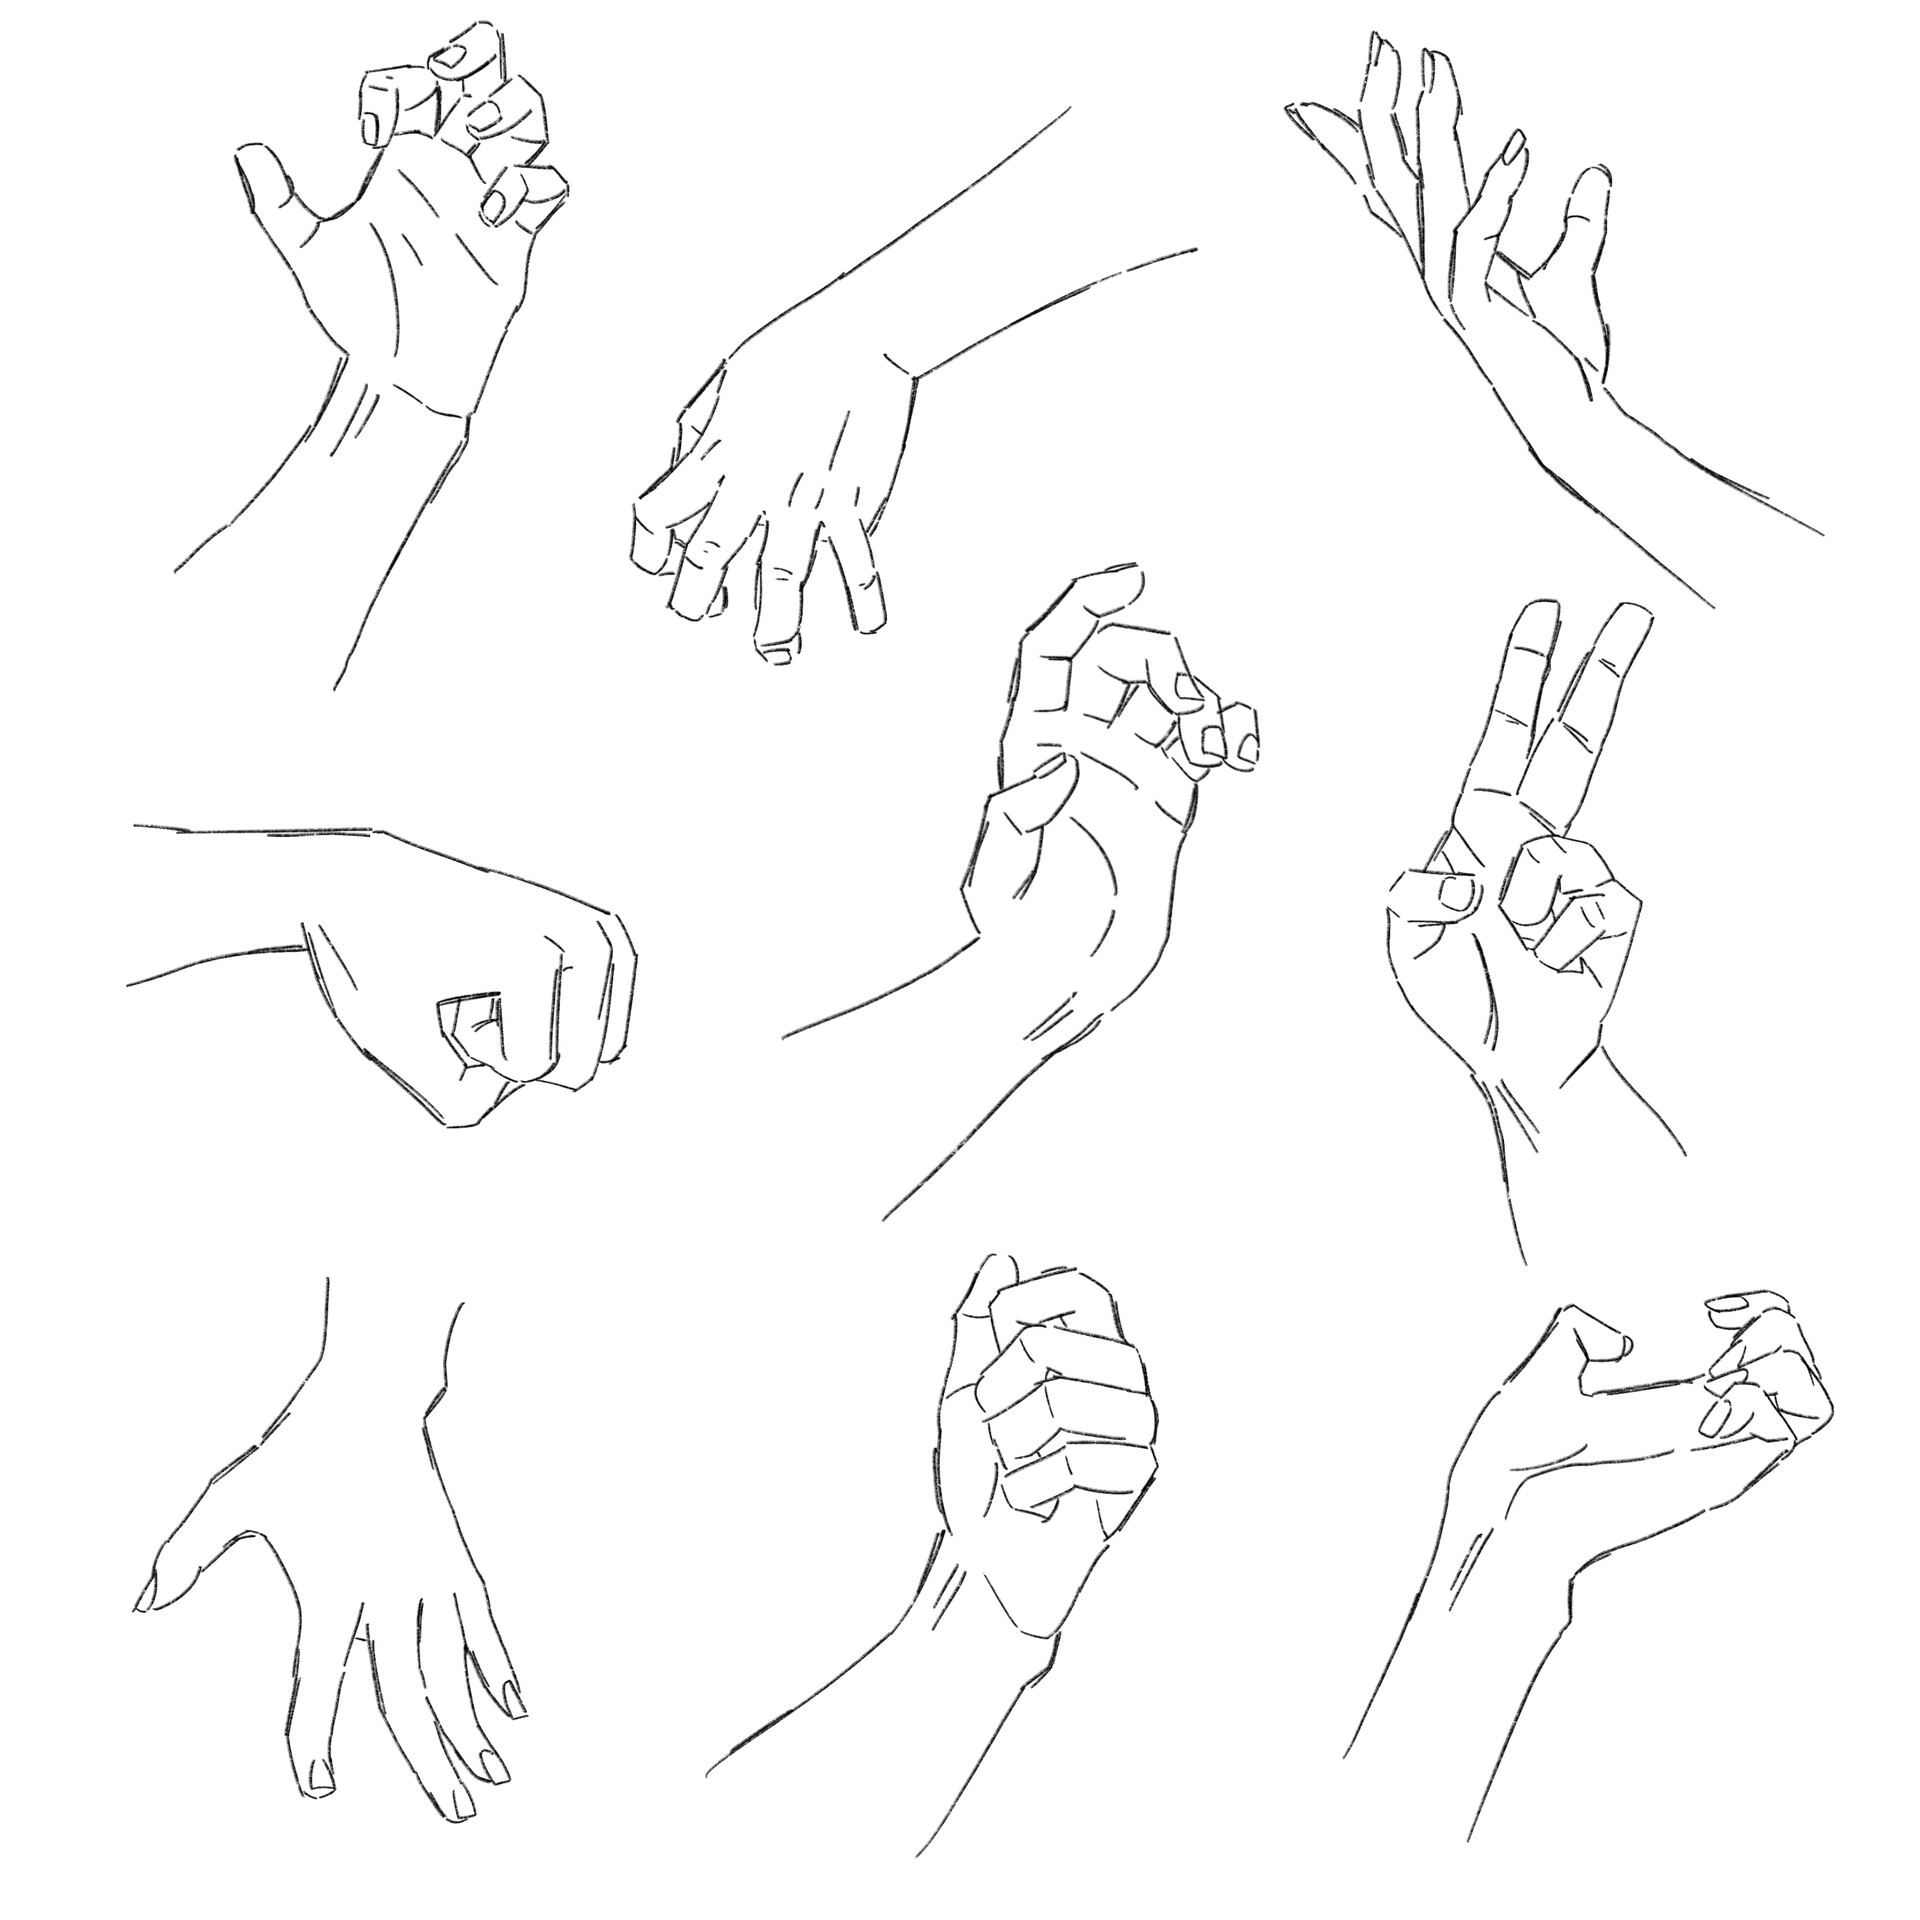 ArtStation - Hands studies